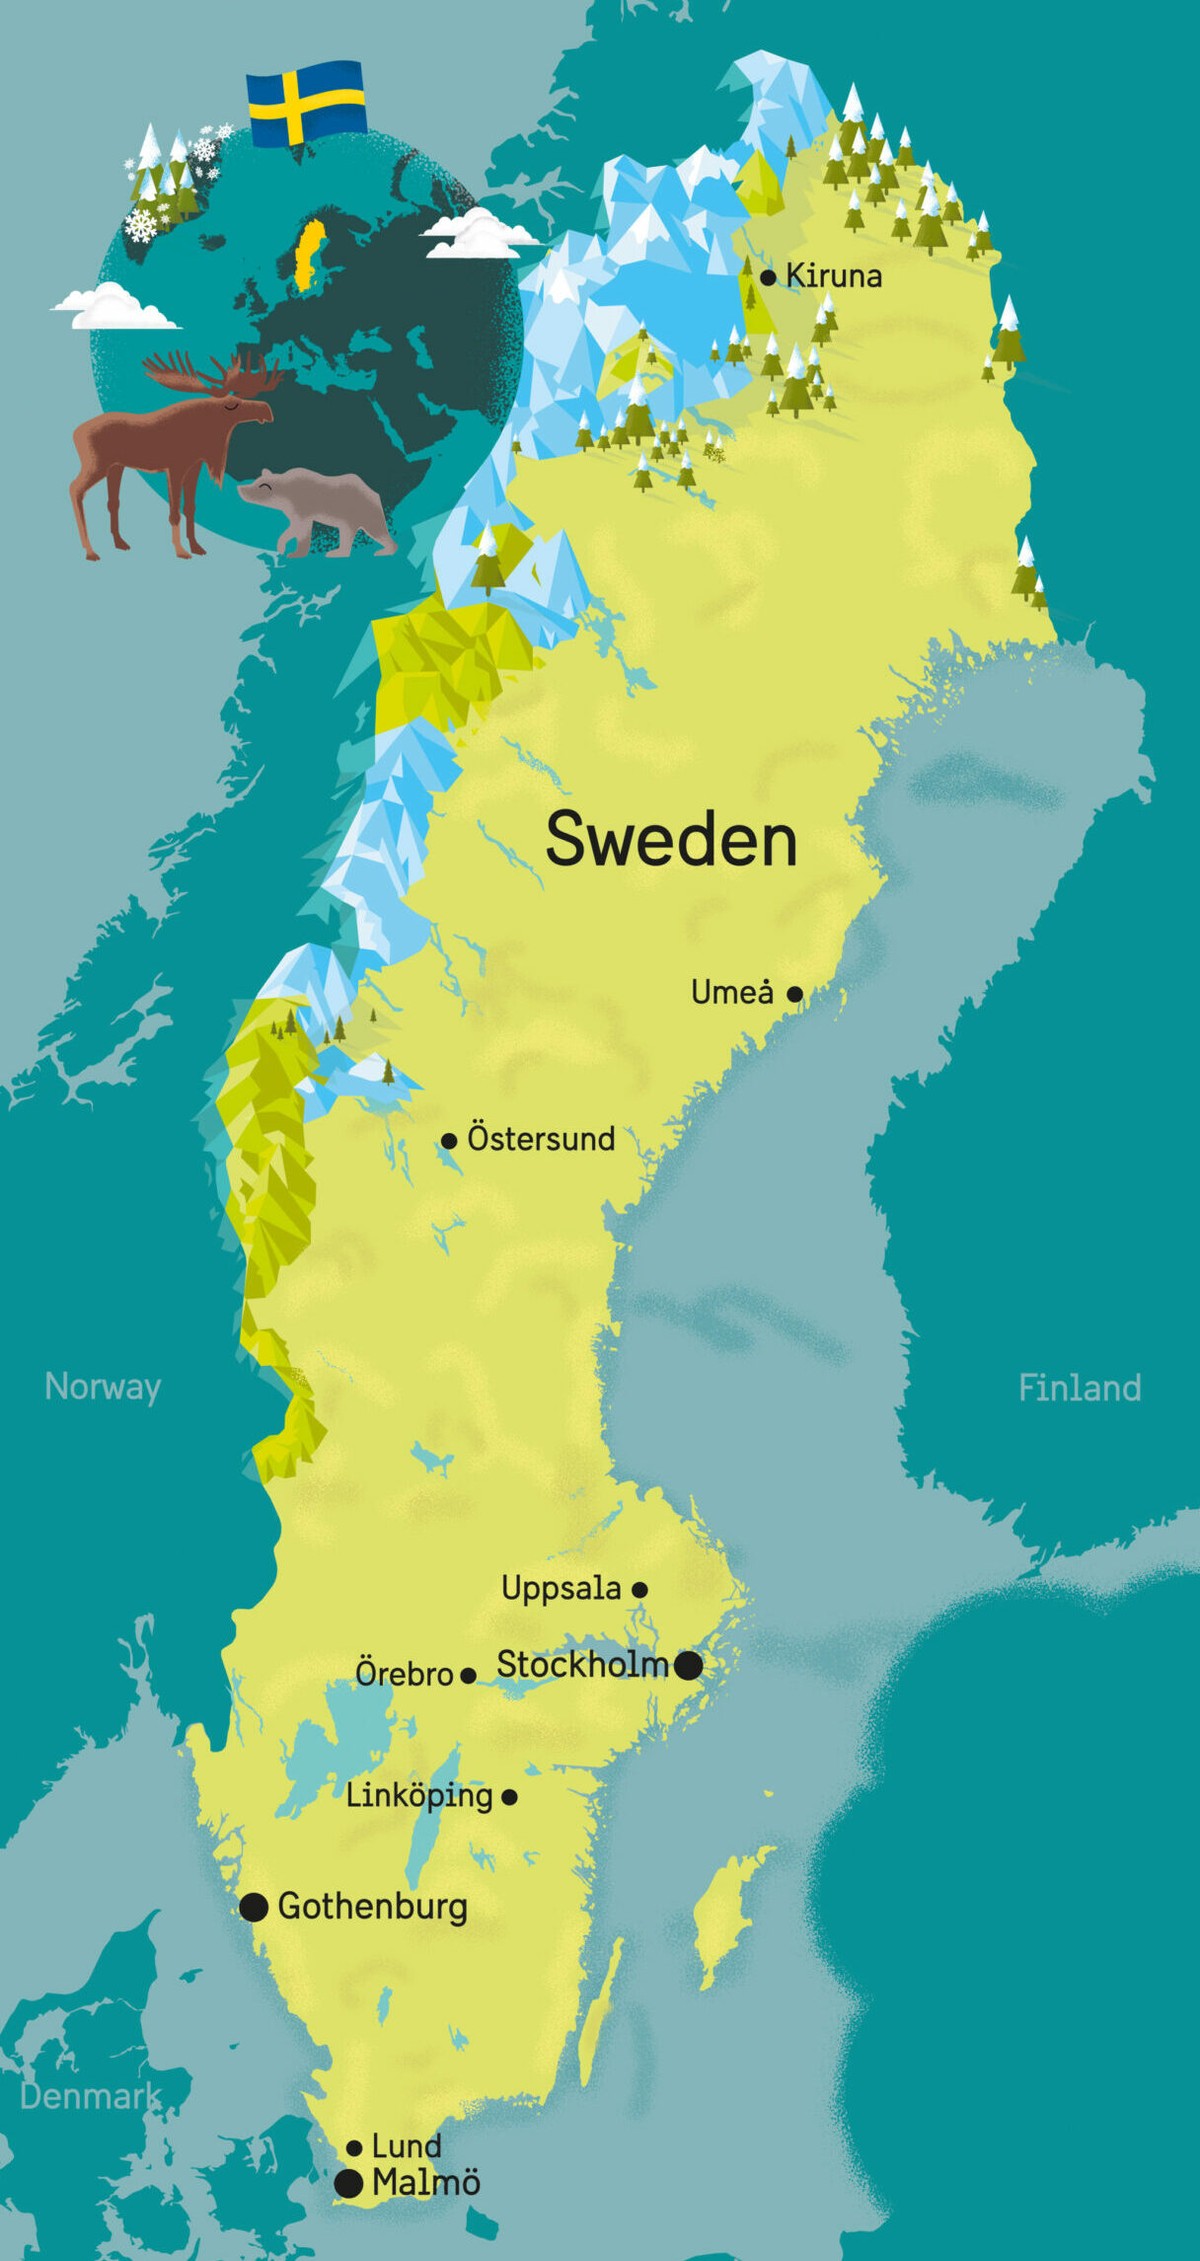 CDM#2 Groupe 3 - Quatrième journée  - Page 2 Image?url=https%3A%2F%2Fcms.sweden.se%2Fapp%2Fuploads%2F2021%2F05%2FSweden_map_incl_Scandinavia_with_cities-scaled-e1621863973455